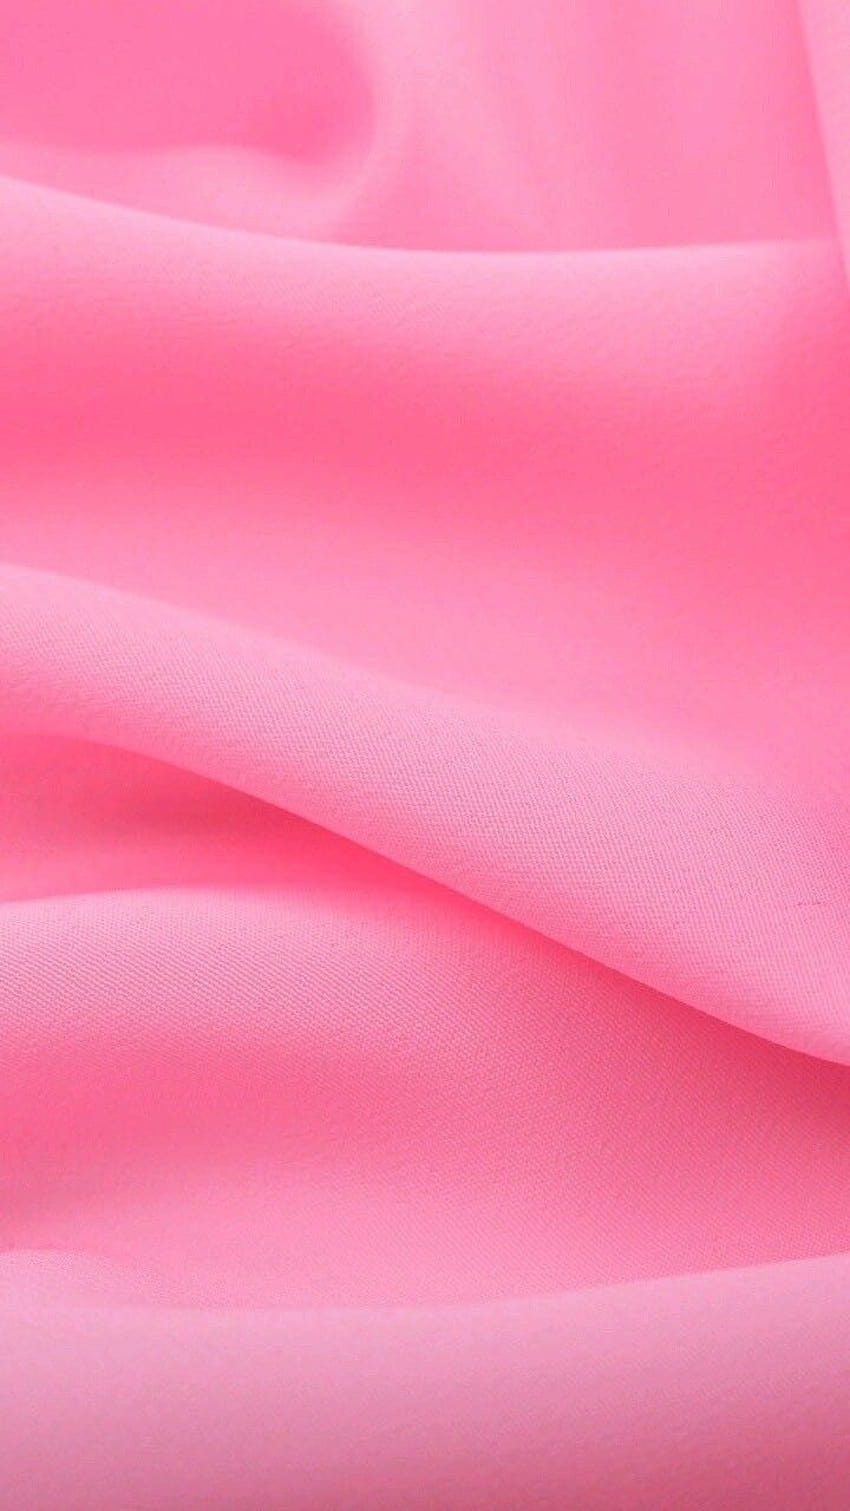 arte, fundo, bonita, beleza, pano, Coloful, desenhar, Tecido, Iphone, padronizar, Rosa, rosa, cetim, seda, estilo, têxtil, textura, Nós amamos isso, Fundo rosa, Cetim rosa, cor pastel, Seda rosa, iphone, pastel Papel de parede de celular HD